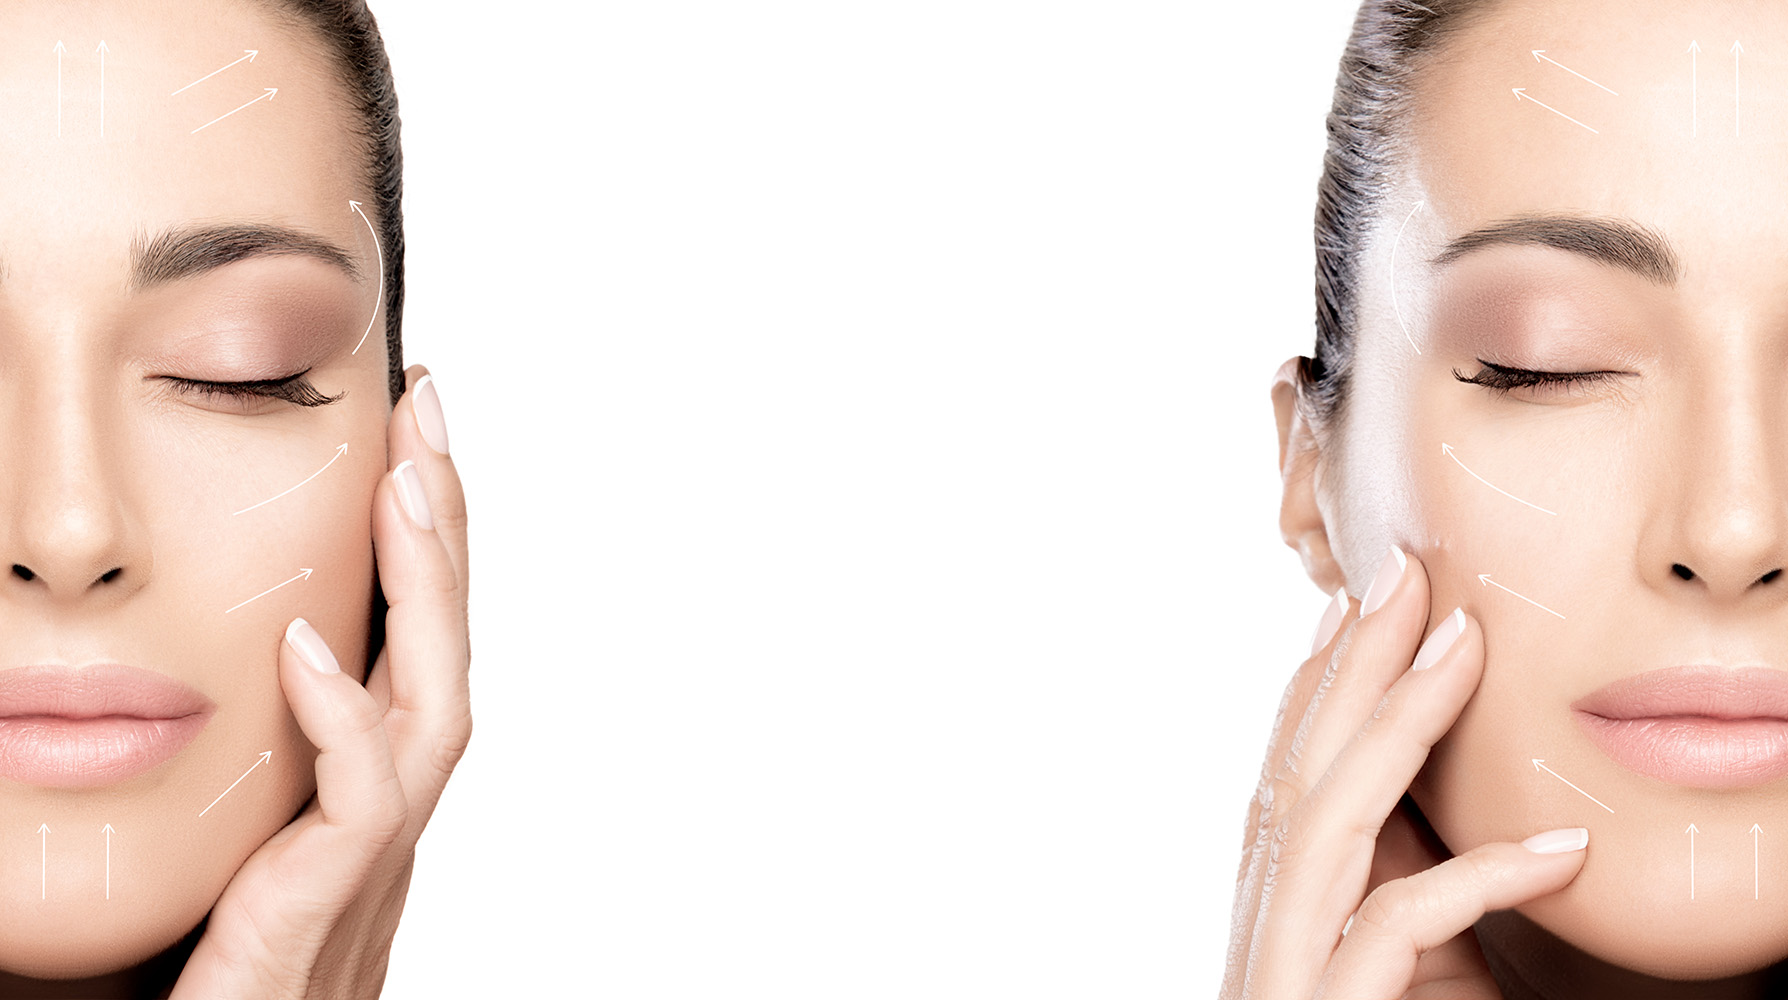 MVZMKG Mund-Kiefer-Gesicht-Chirurgie - Korrektur an Stirn und Brauen